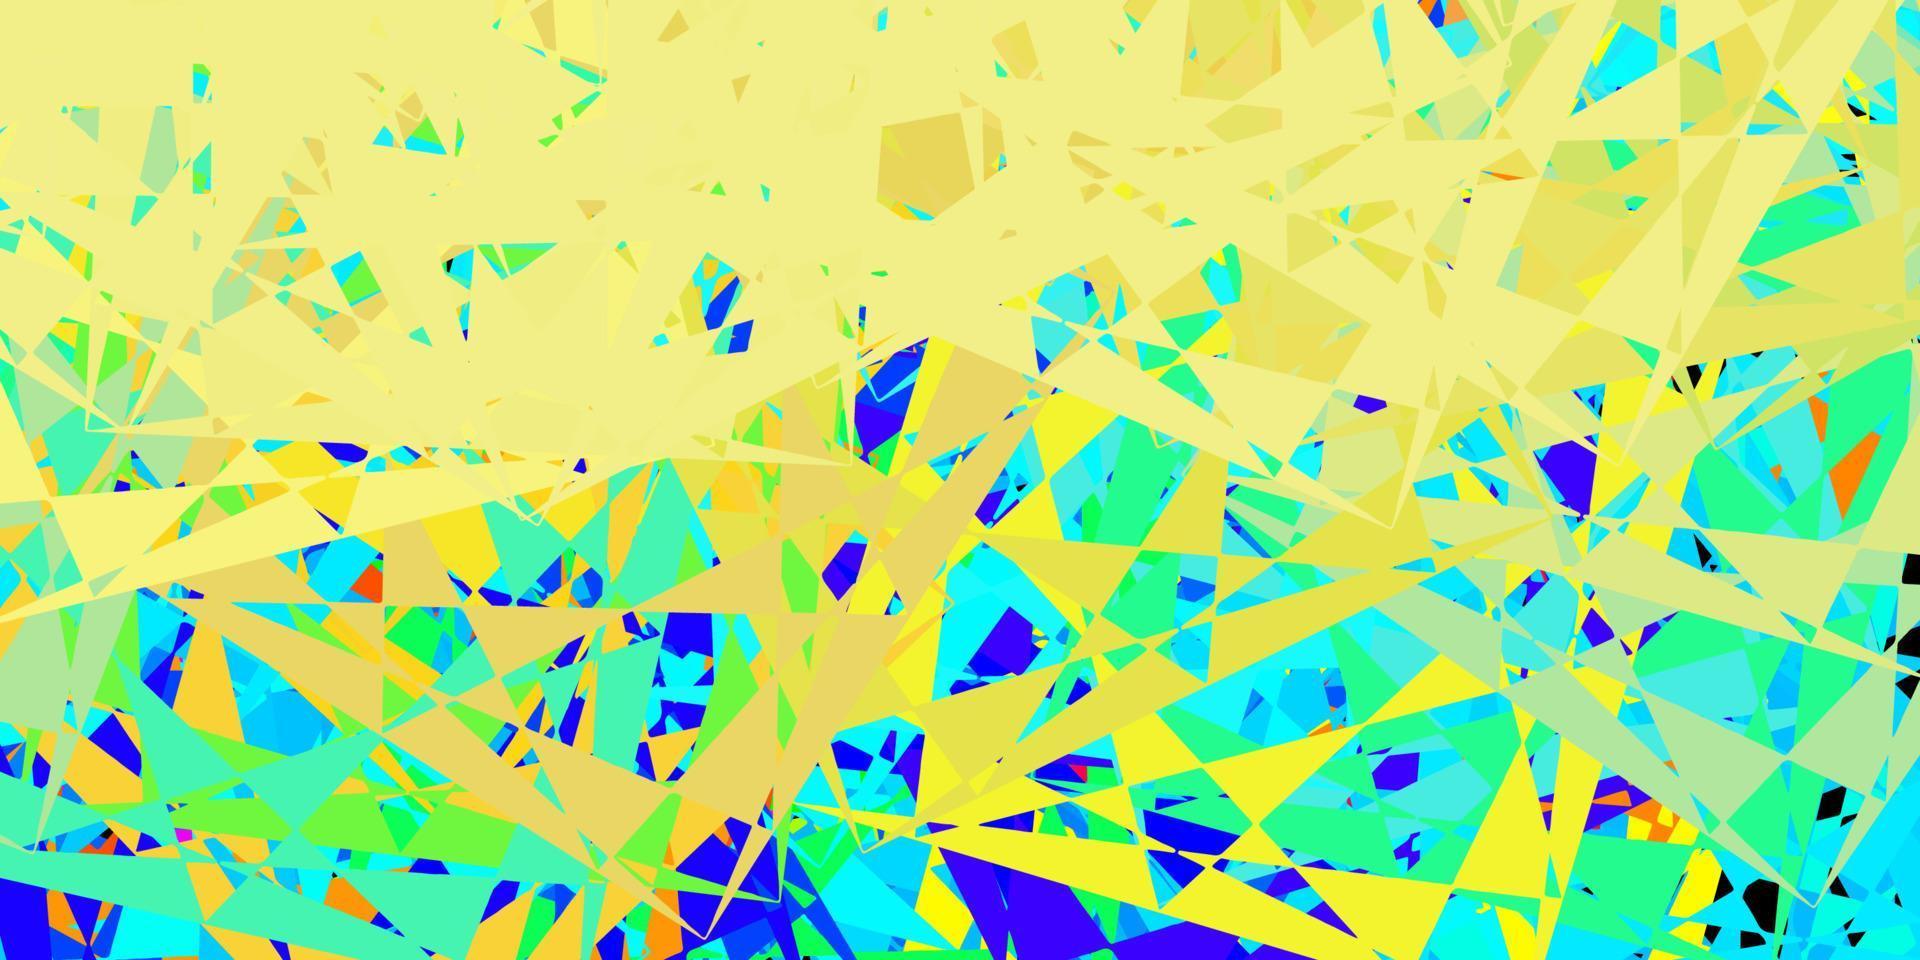 fond de vecteur bleu foncé, jaune avec des triangles.